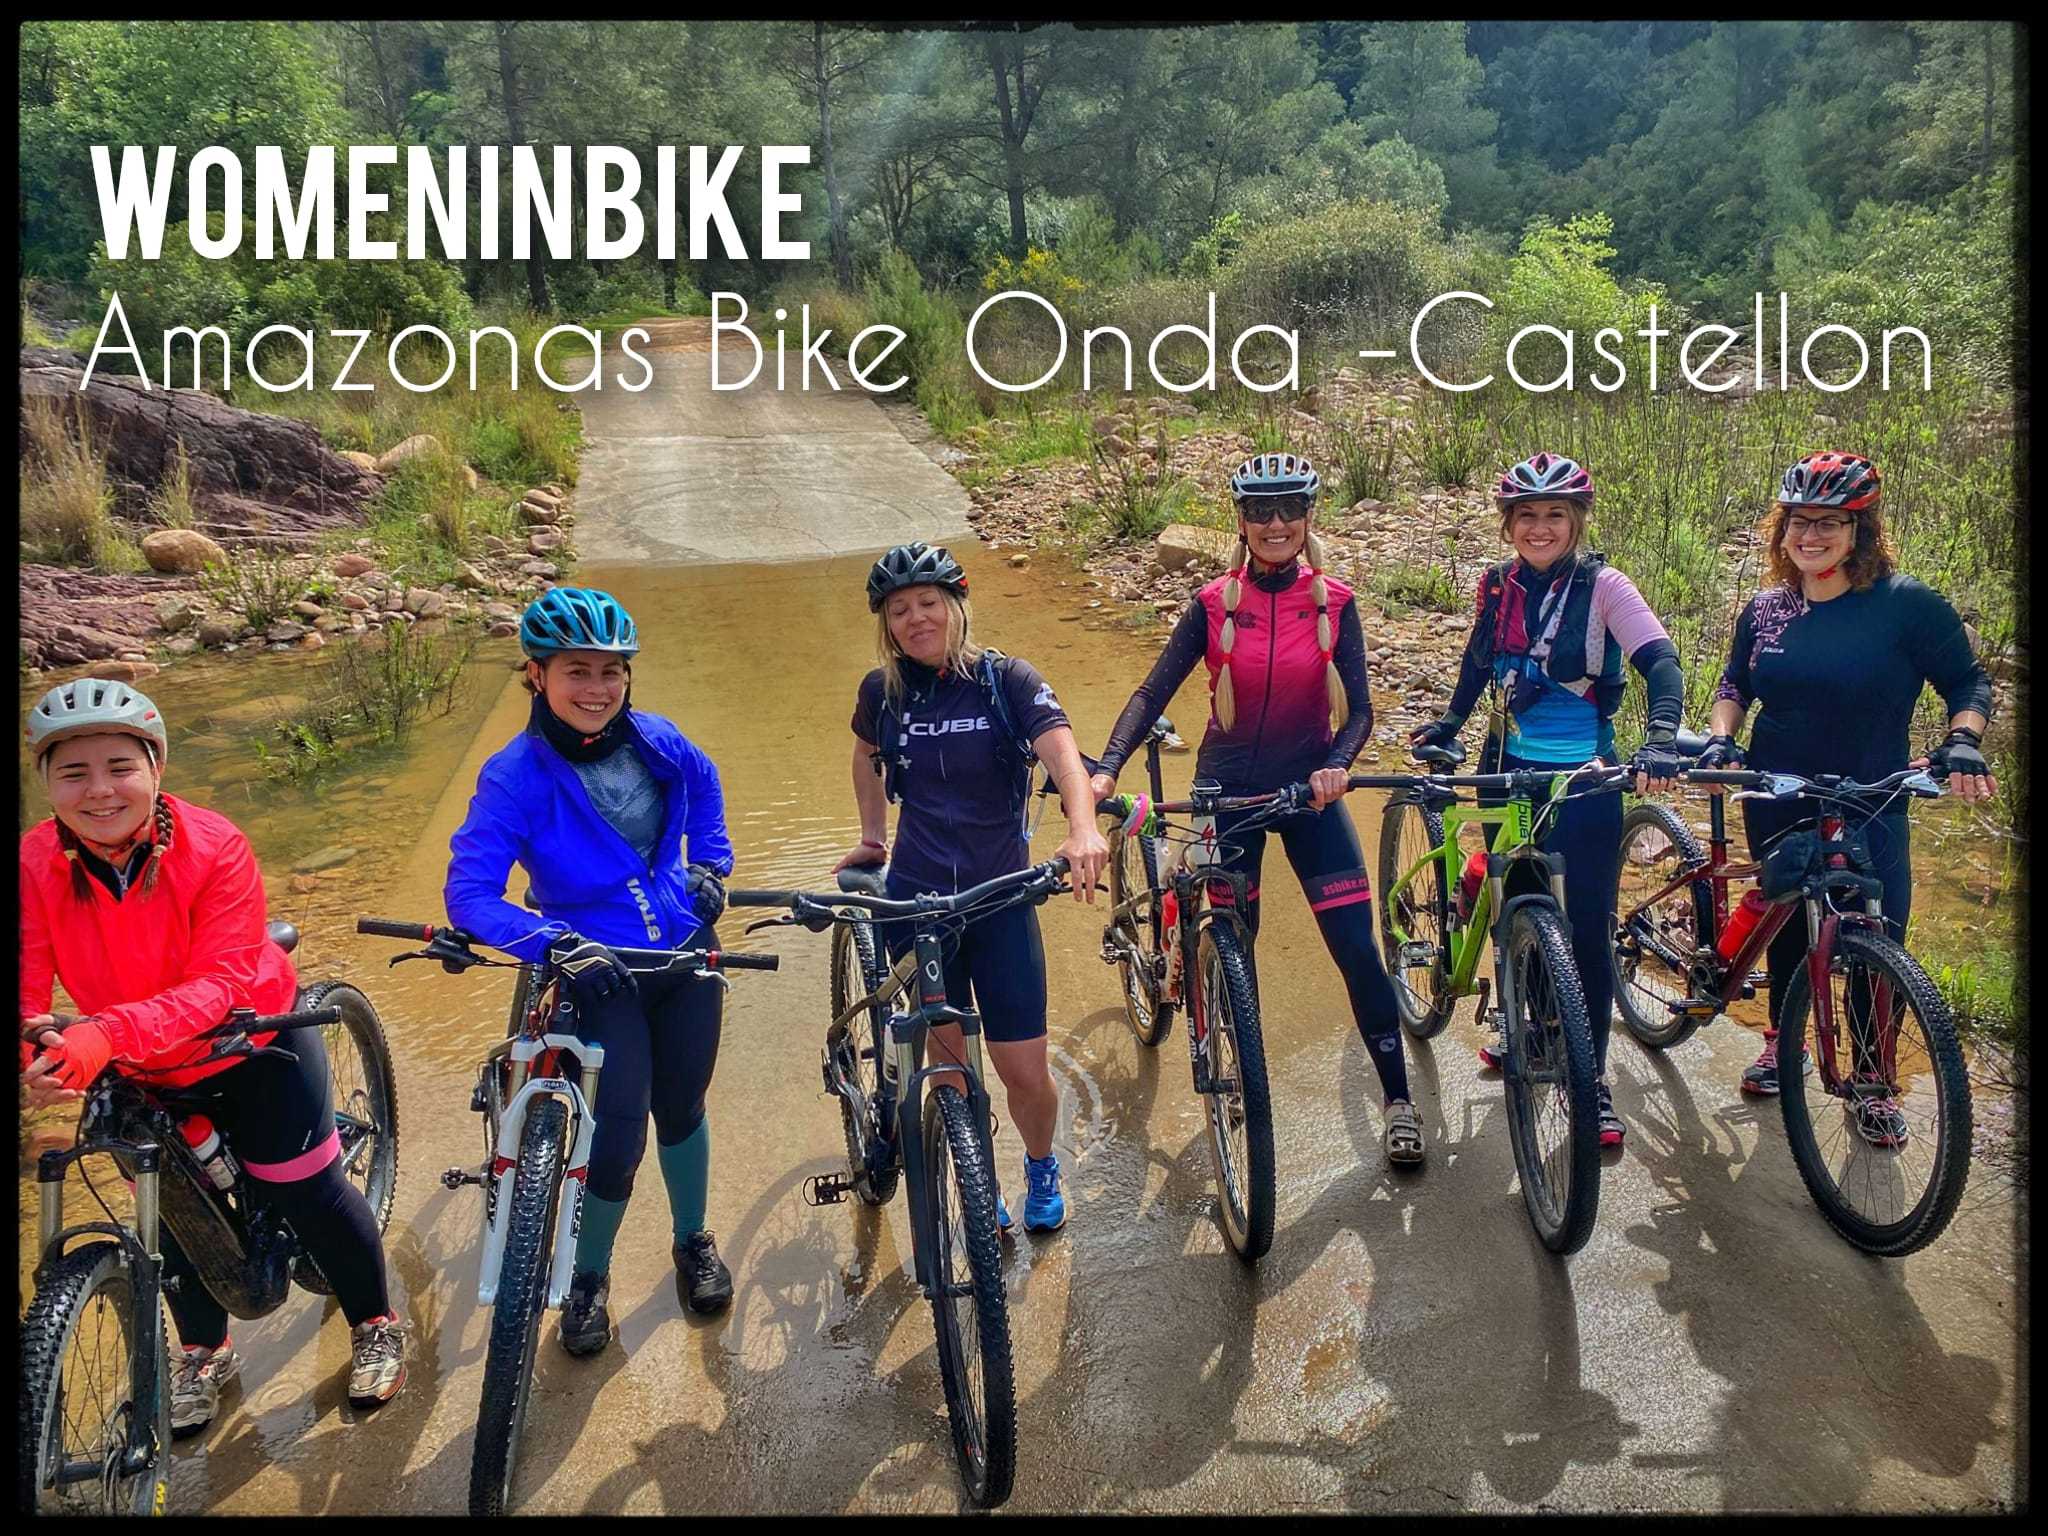 La FCCV apoya el proyecto Women In Bike y el crecimiento del cicloturismo femenino